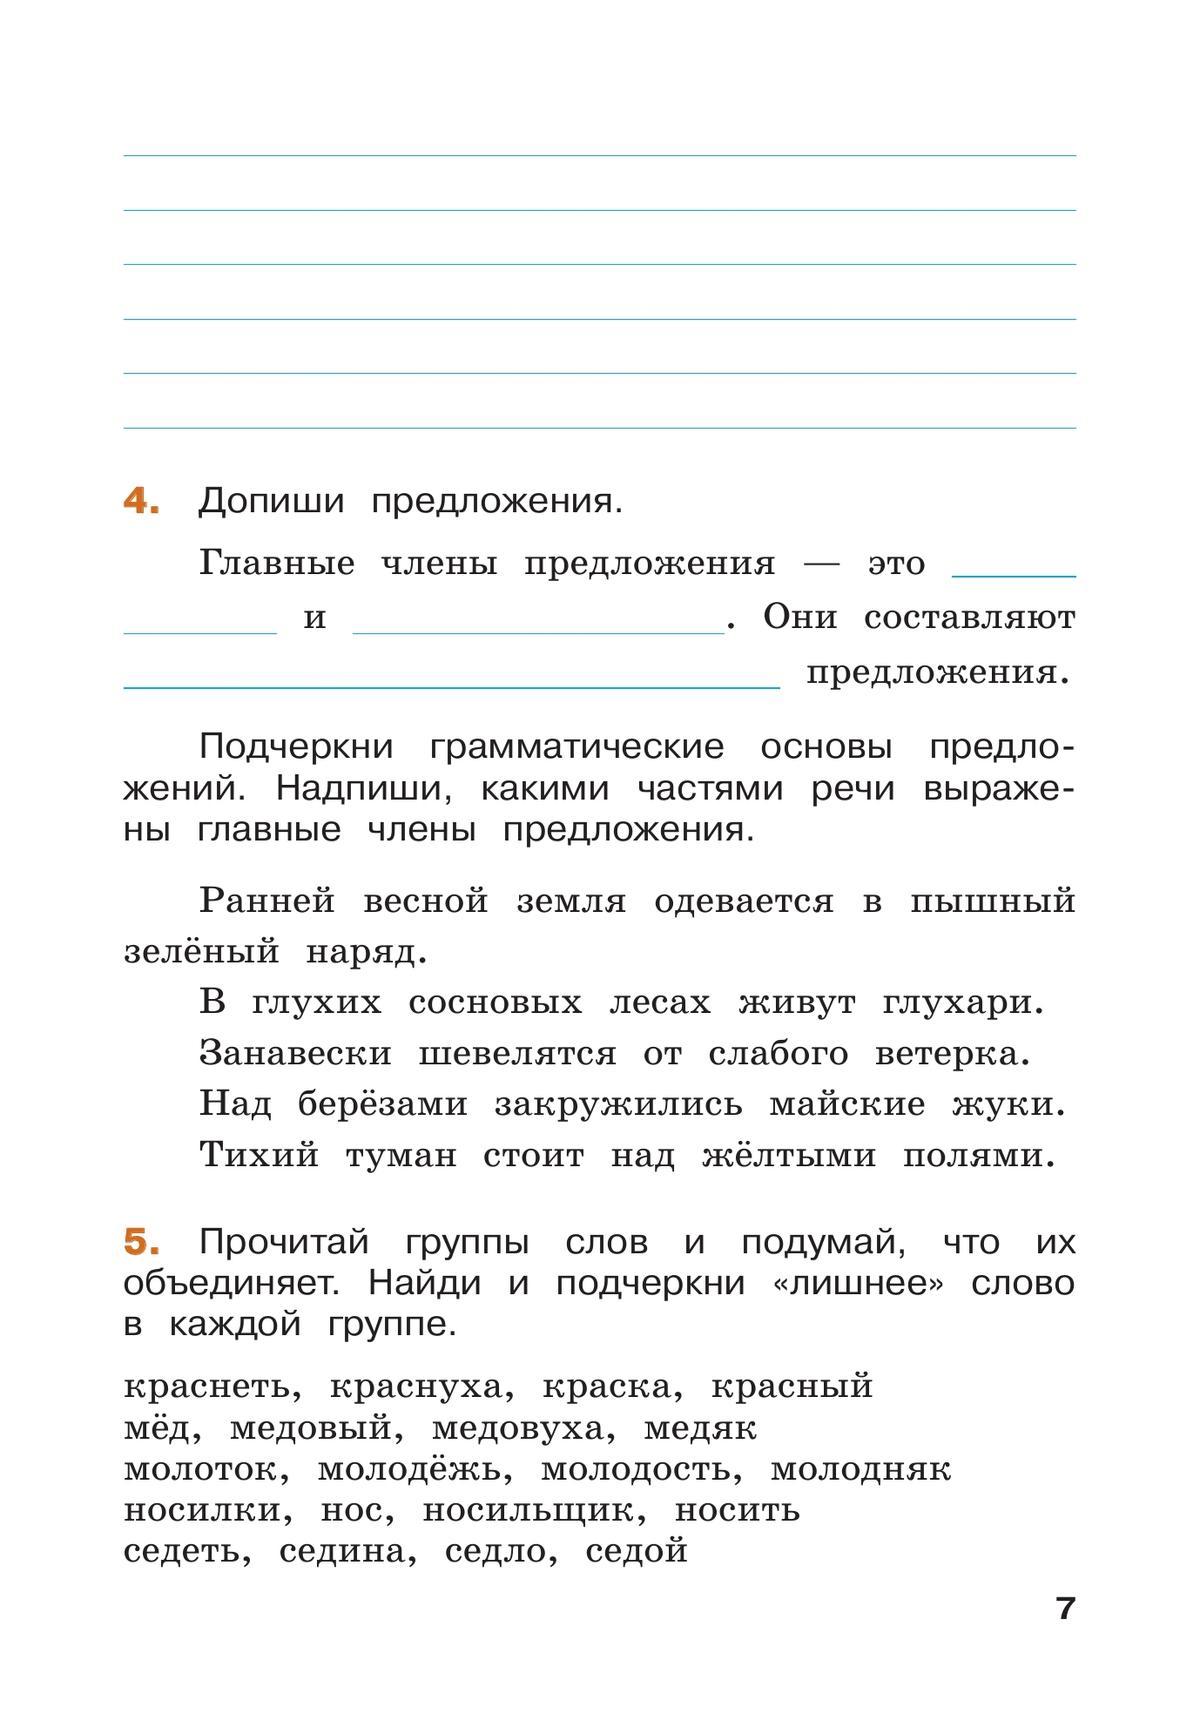 Русский язык. Проверяем свои знания летом. 3 класс. купить на сайте группы  компаний «Просвещение»